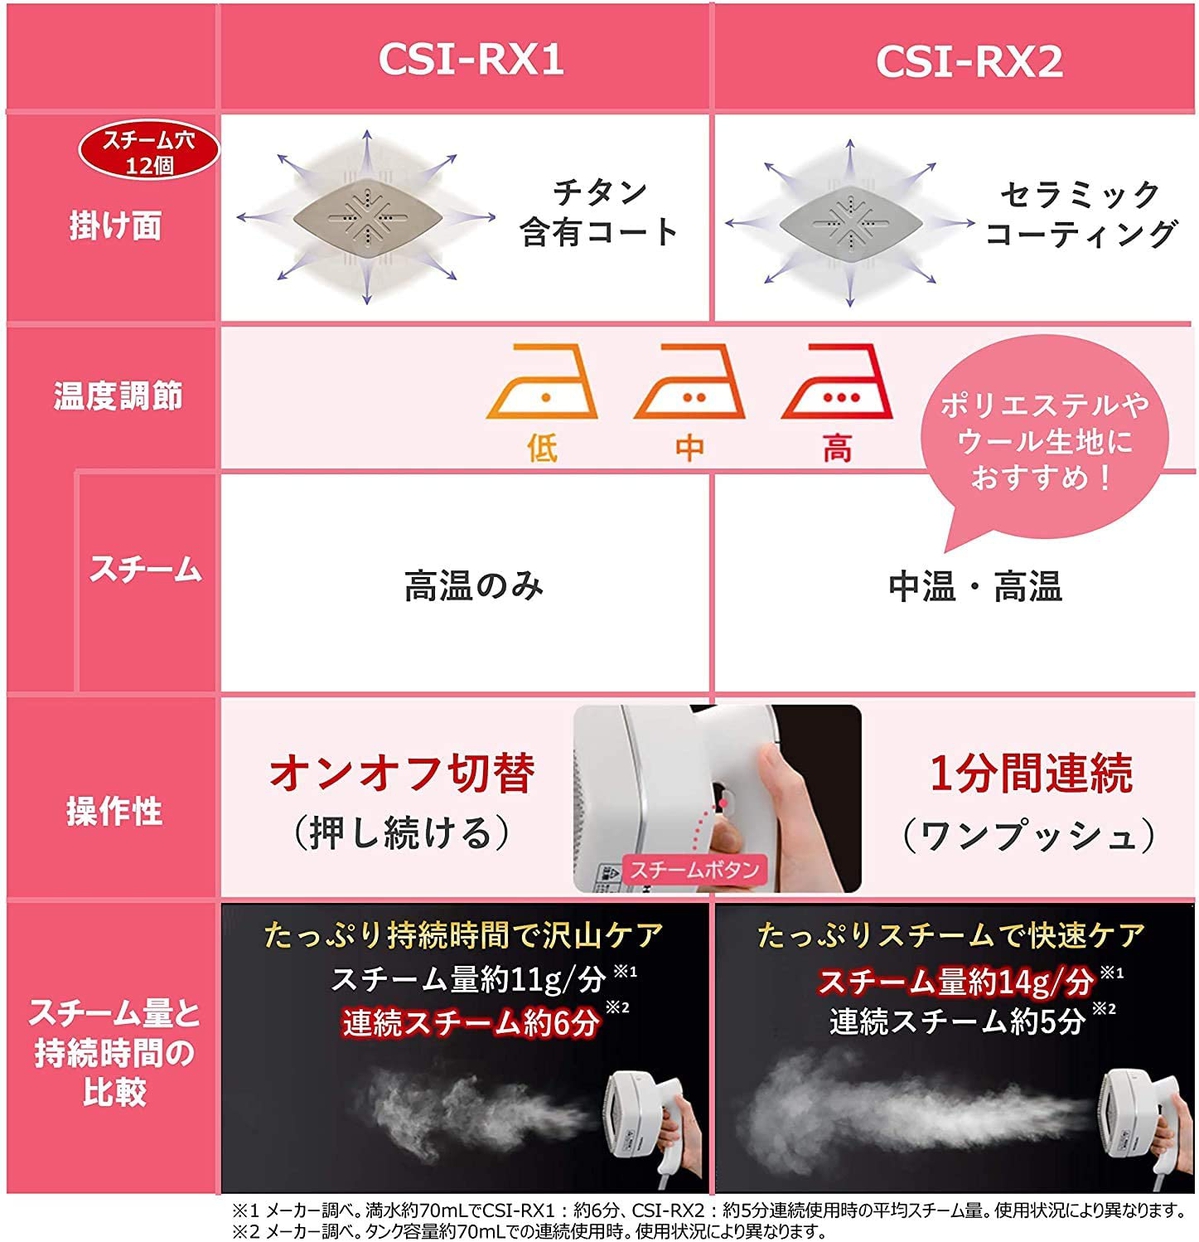 日立(HITACHI) 衣類スチーマー CSI-RX2の商品画像サムネ3 